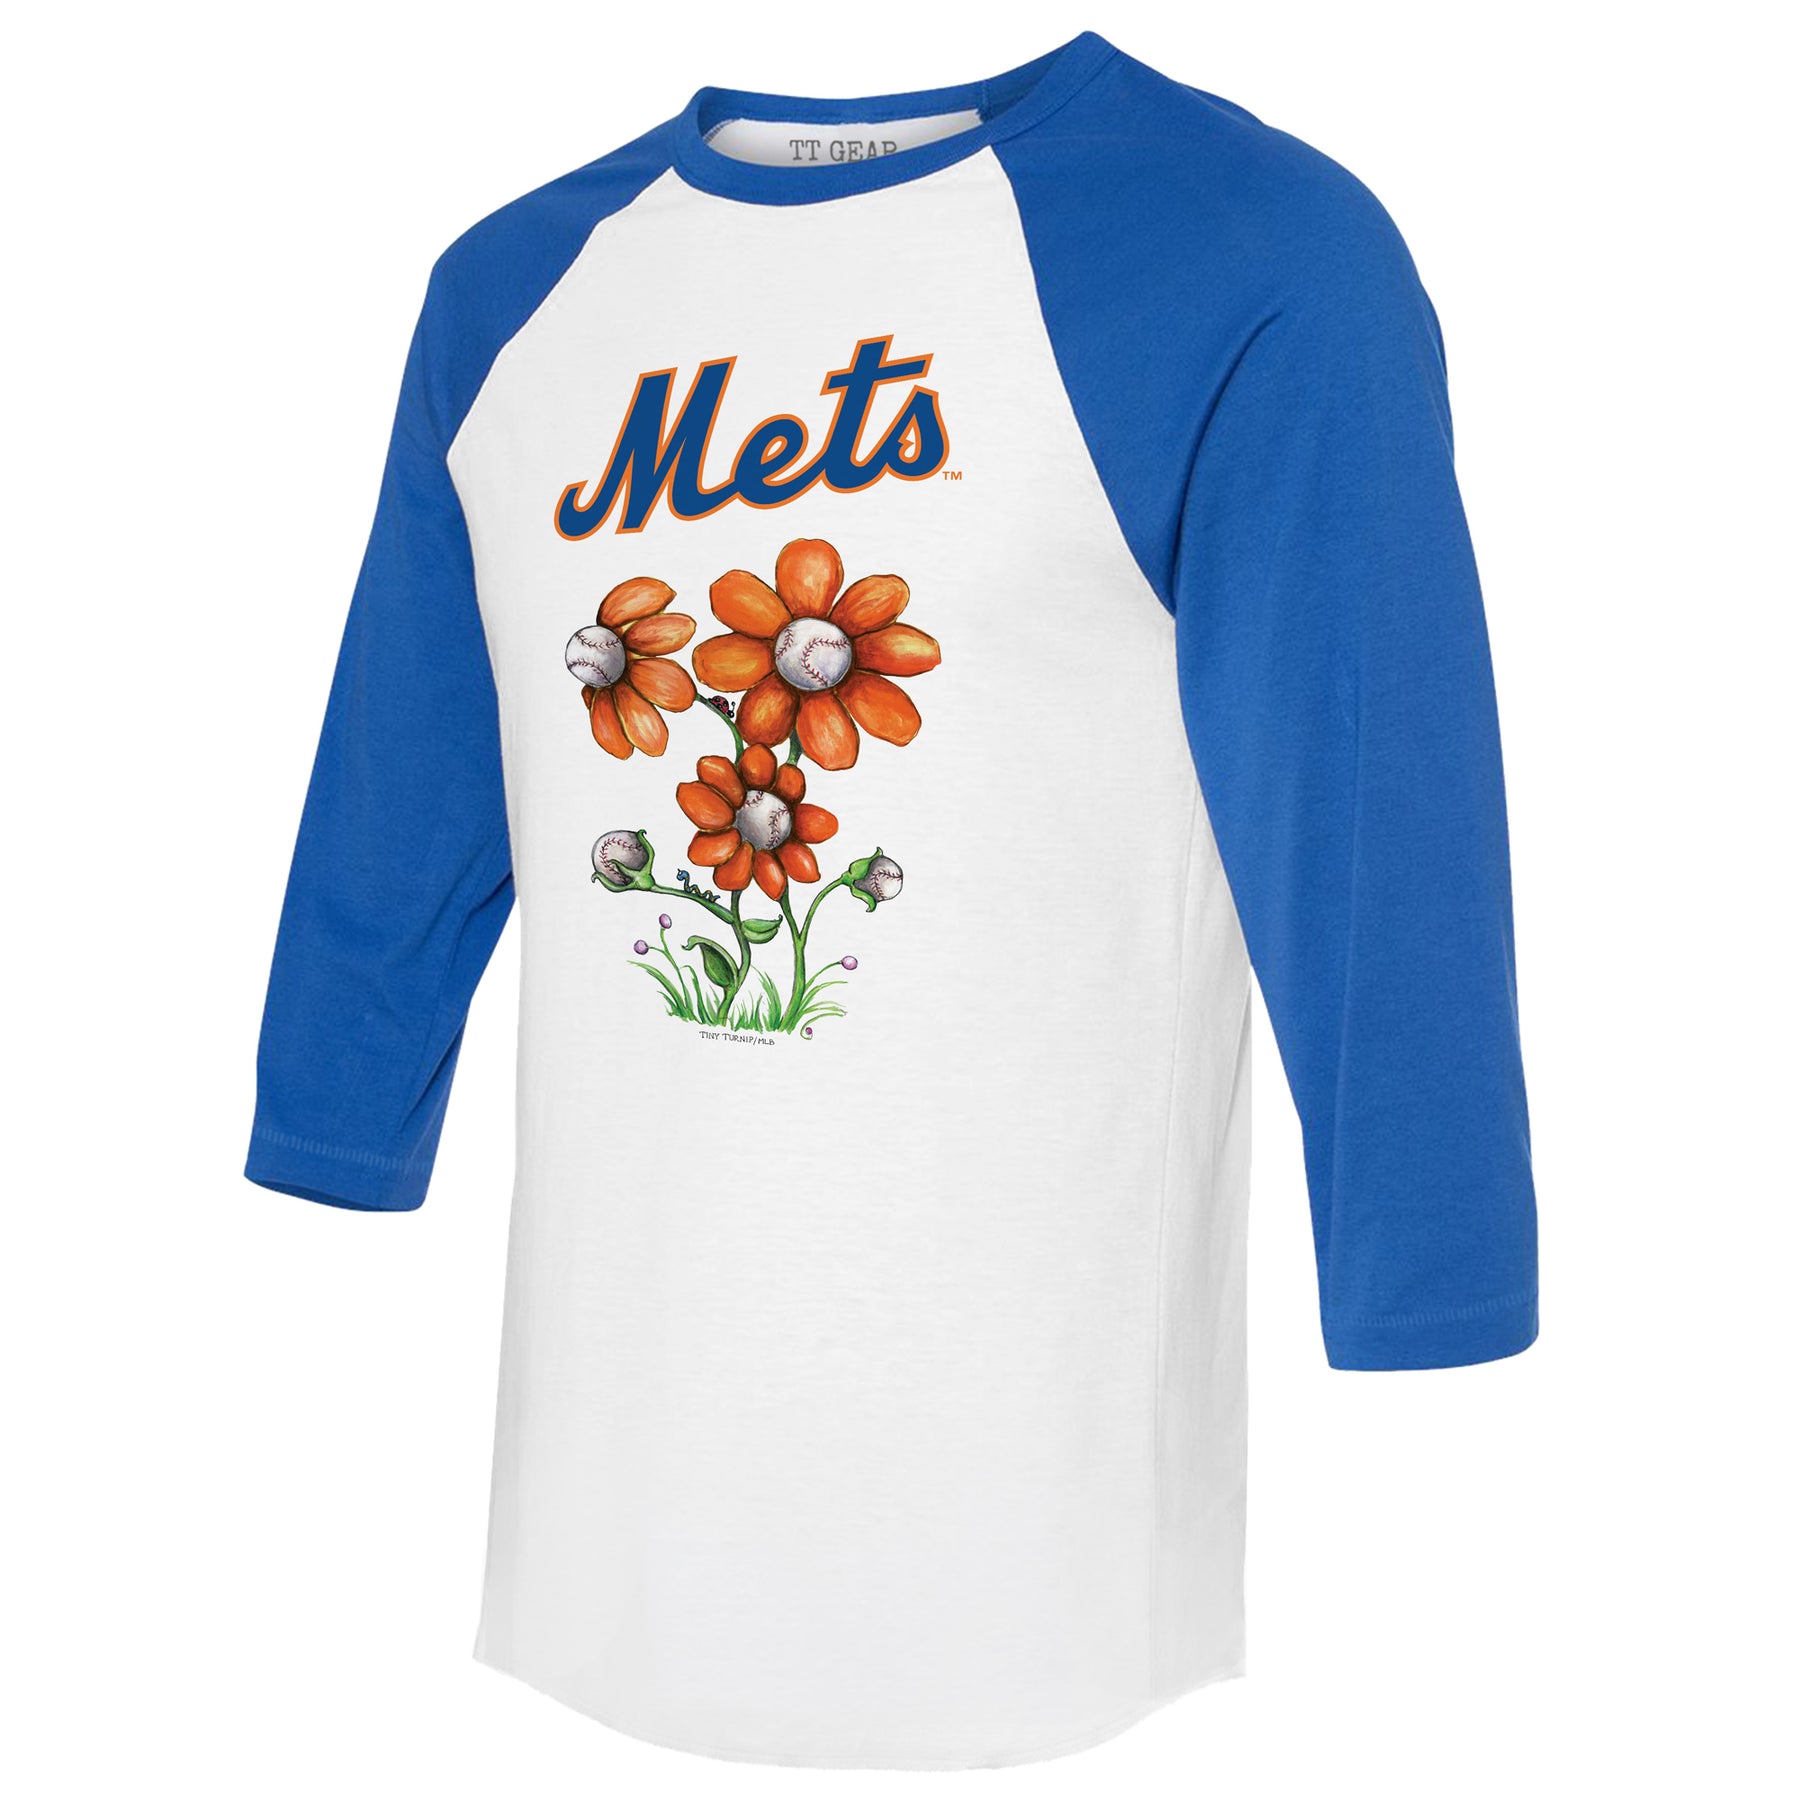 New York Mets Blooming Baseballs 3/4 Royal Blue Sleeve Raglan